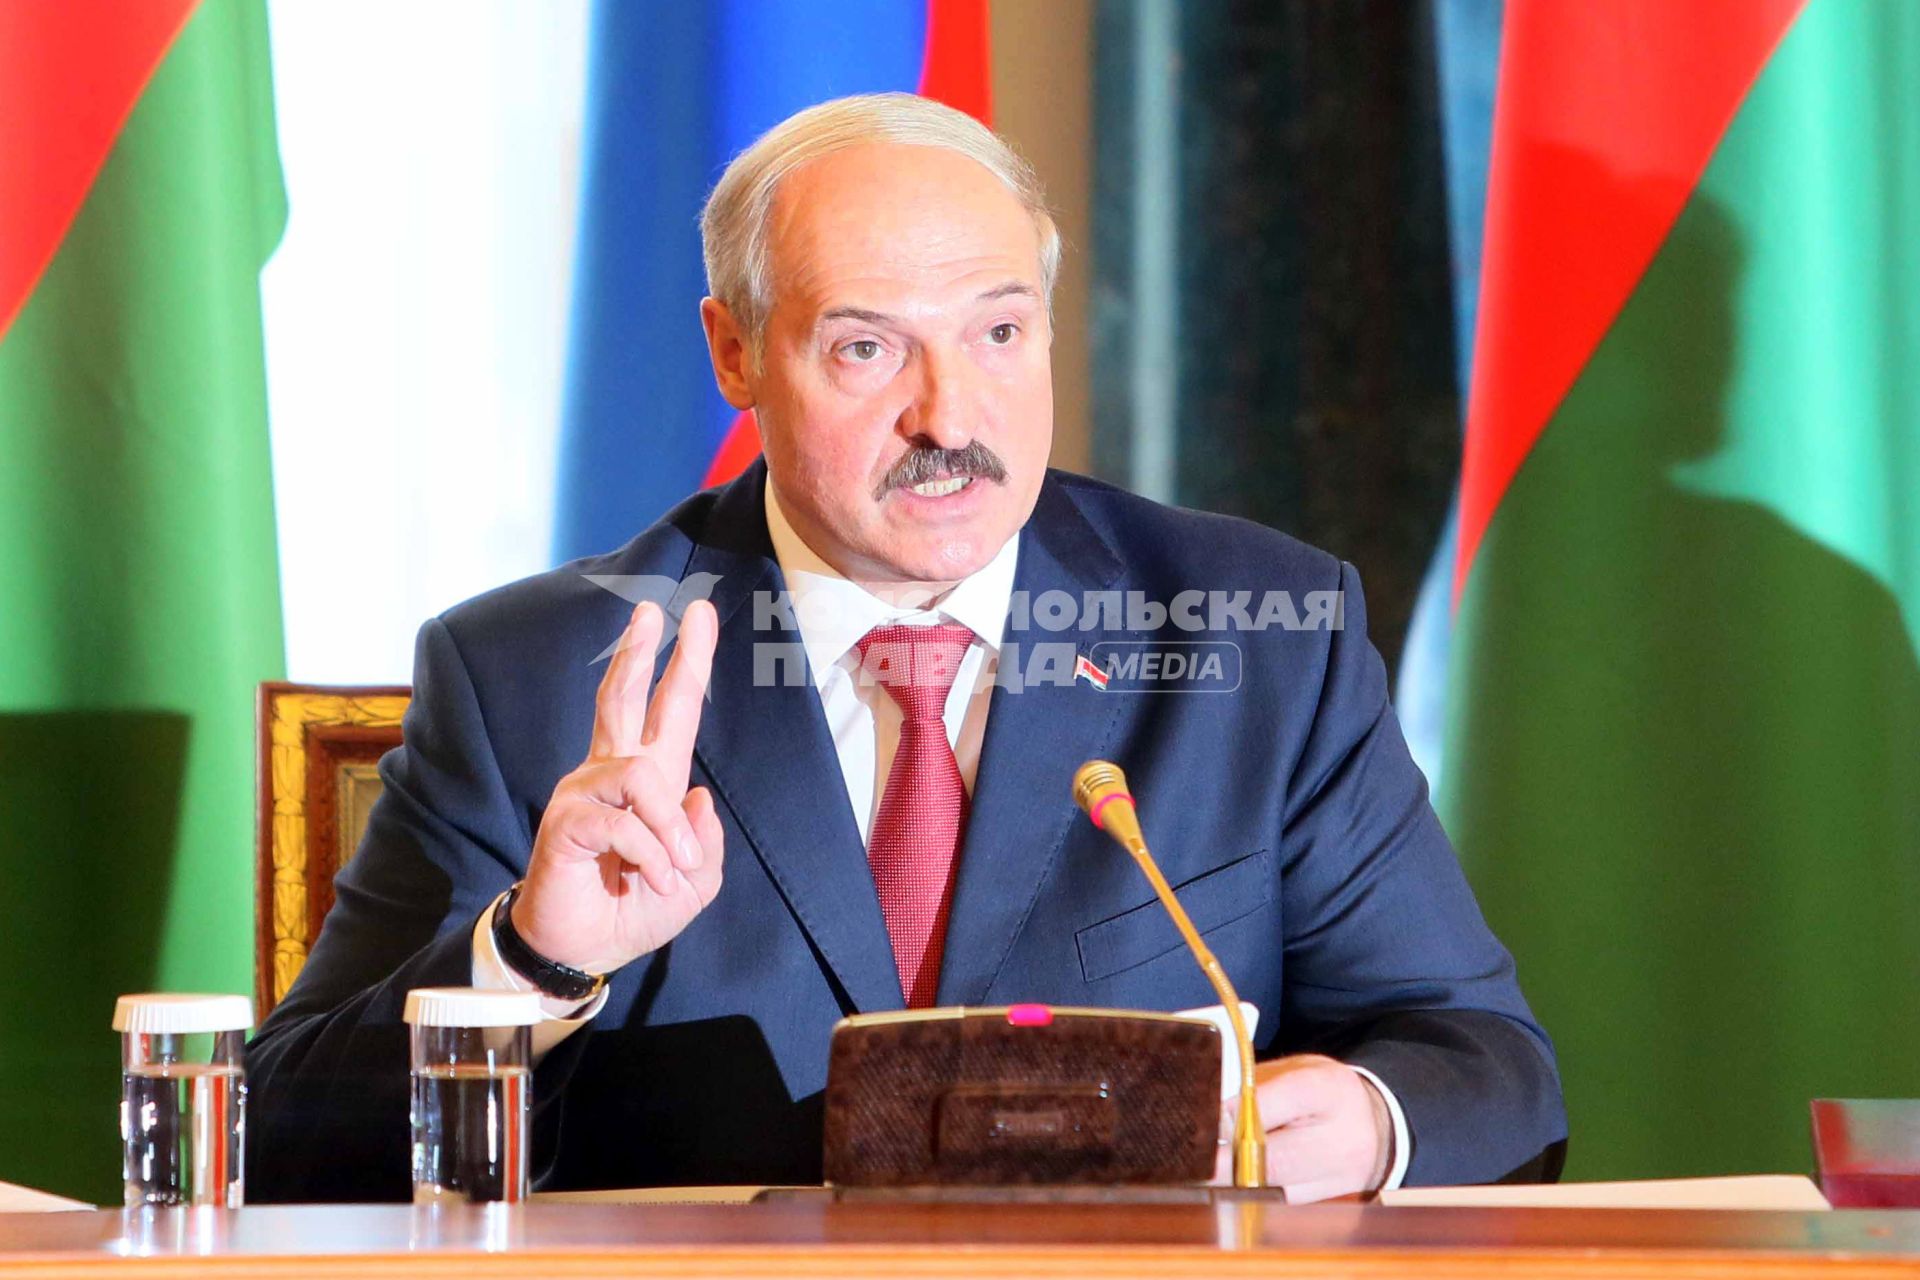 Президент республики Белоруссия Александр Лукашенко в Константиновском дворце после подписания совместных документов по итогам заседания Высшего Государственного Совета Союзного государства в Санкт-Петербурге.